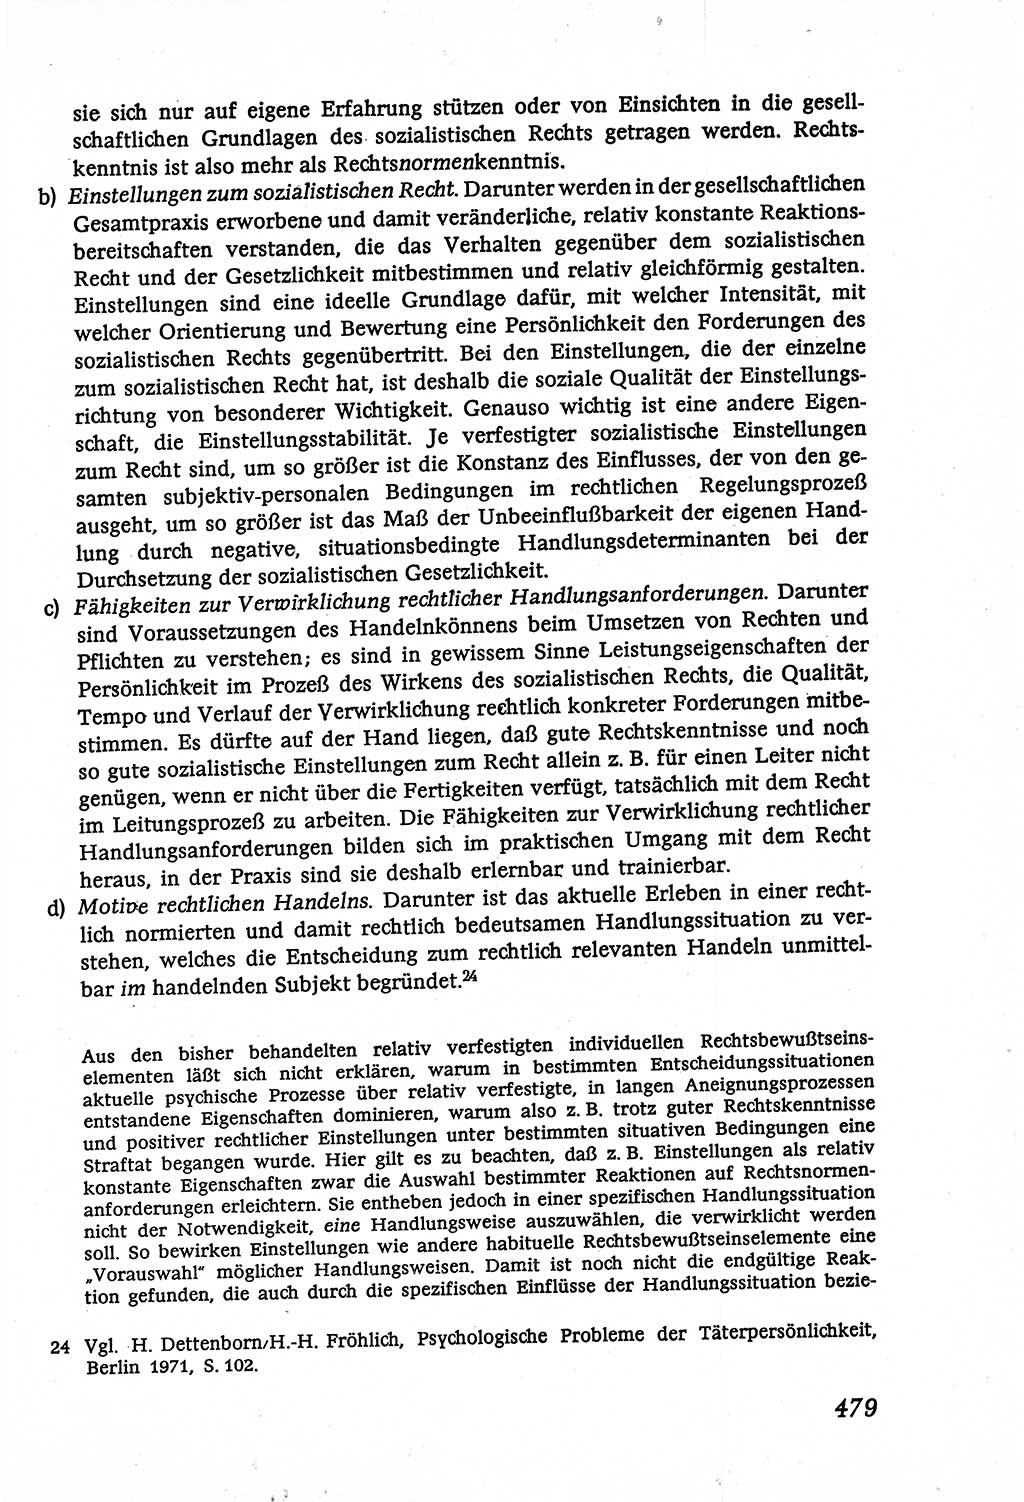 Marxistisch-leninistische (ML) Staats- und Rechtstheorie [Deutsche Demokratische Republik (DDR)], Lehrbuch 1980, Seite 479 (ML St.-R.-Th. DDR Lb. 1980, S. 479)